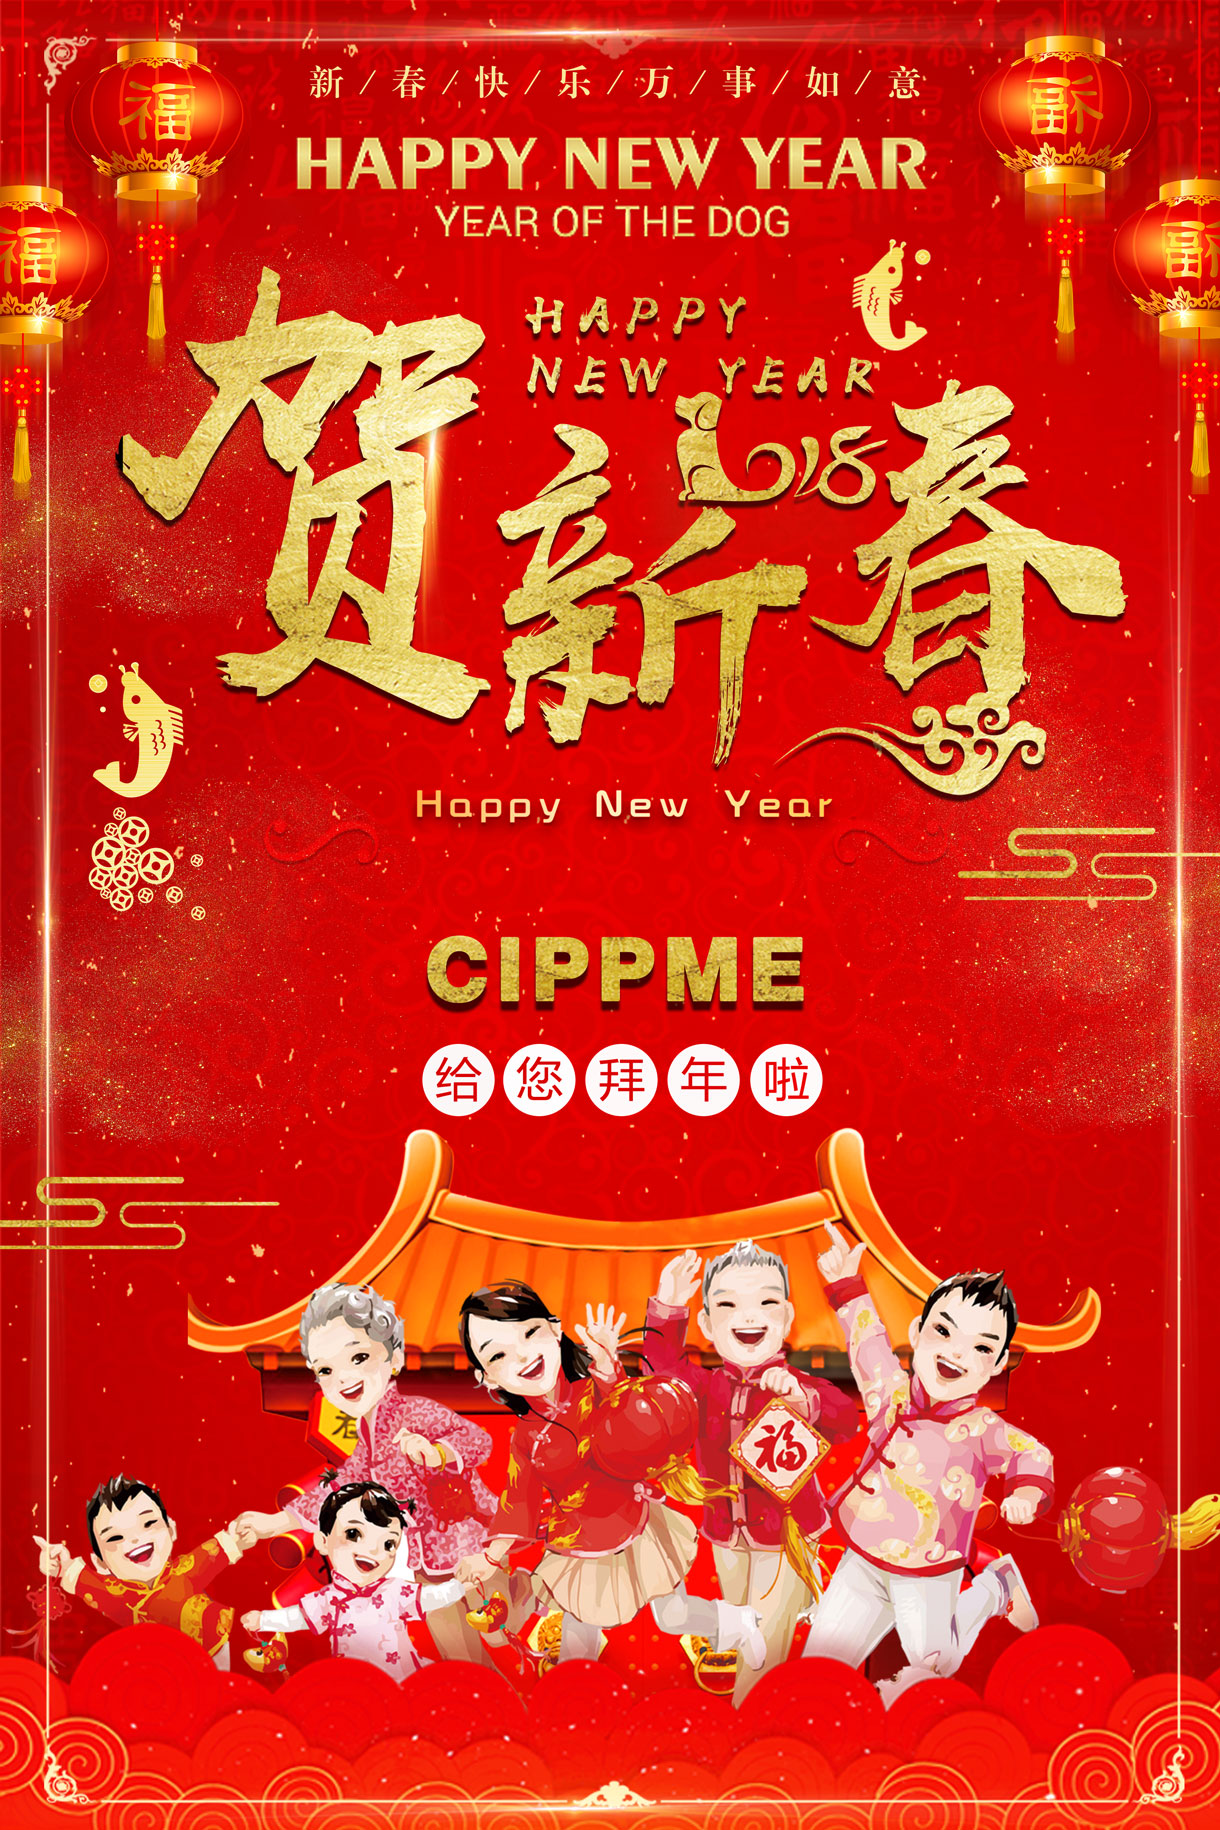 上海国际包装展祝你新春快乐